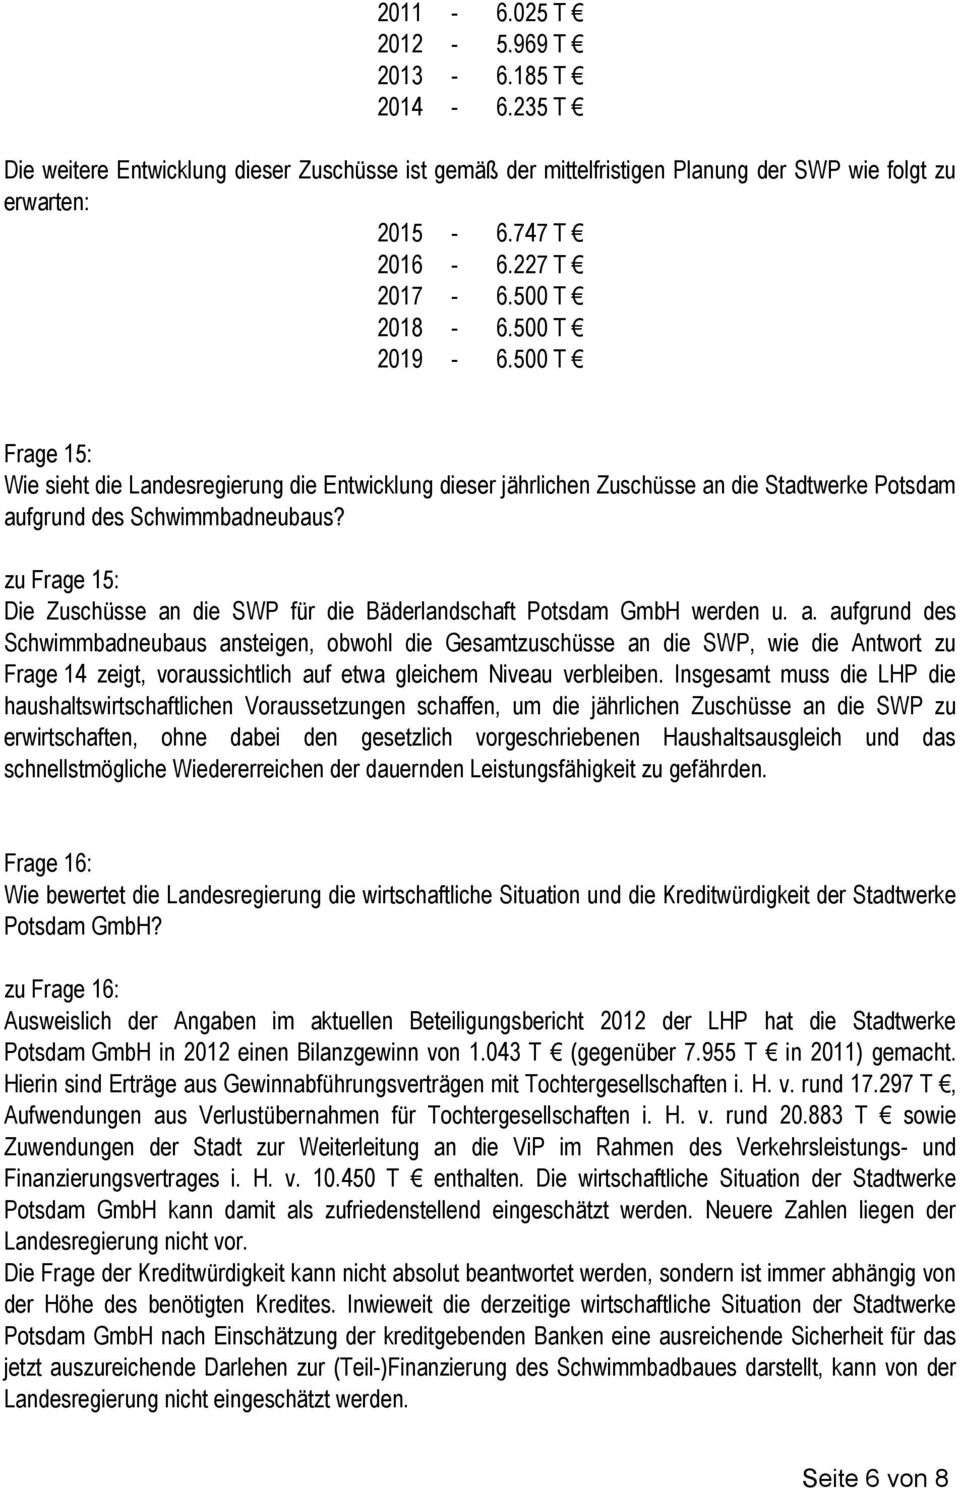 zu Frage 15: Die Zuschüsse an die SWP für die Bäderlandschaft Potsdam GmbH werden u. a. aufgrund des Schwimmbadneubaus ansteigen, obwohl die Gesamtzuschüsse an die SWP, wie die Antwort zu Frage 14 zeigt, voraussichtlich auf etwa gleichem Niveau verbleiben.